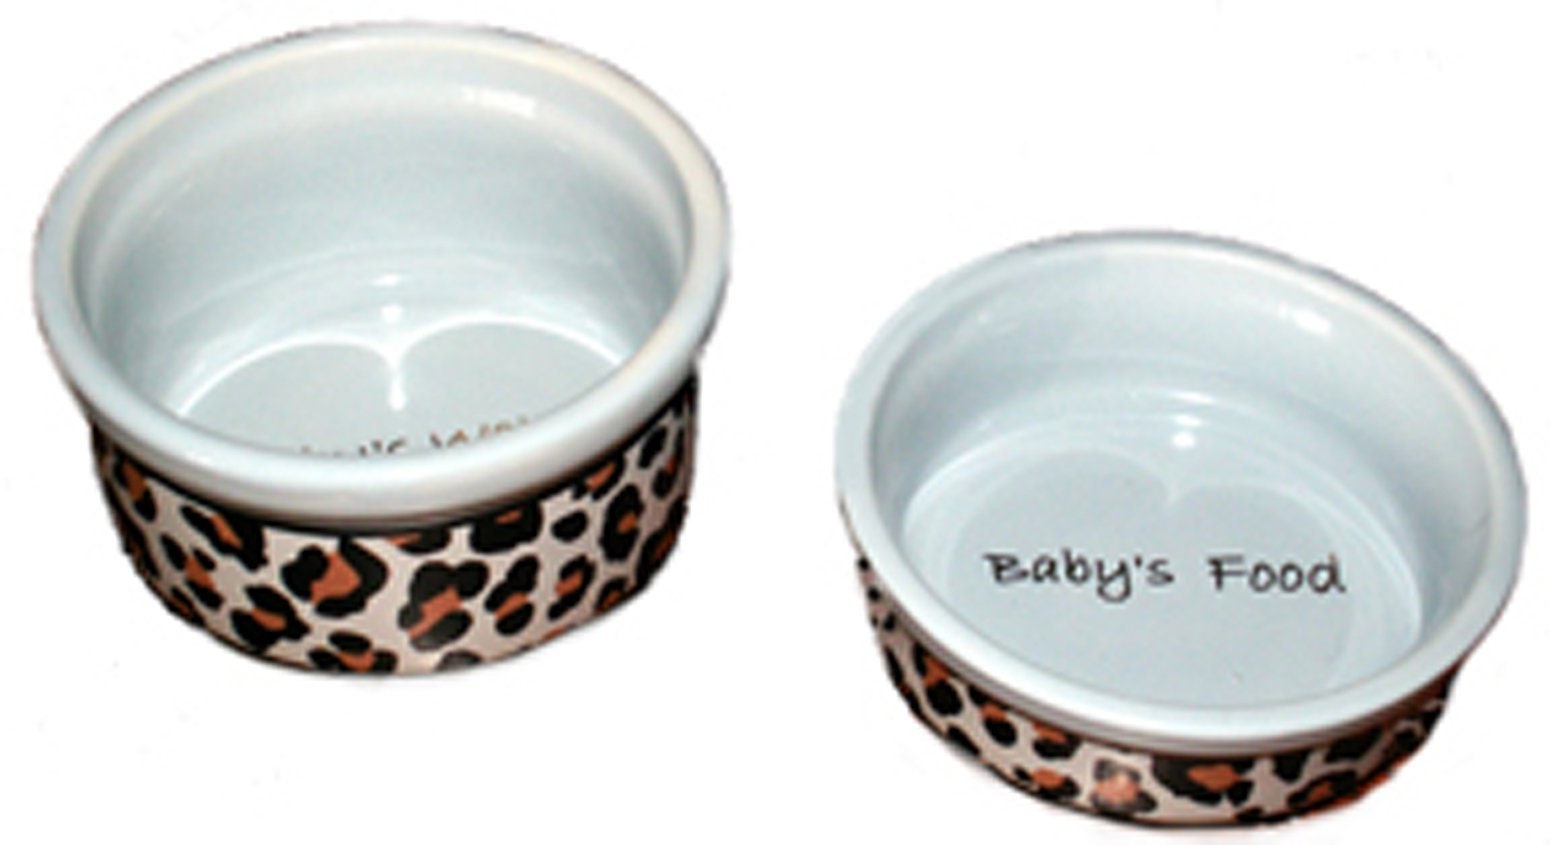 Small Cat Bowls Small Dog Bowls Teacup Pet Bowls Cute Pet Bowls